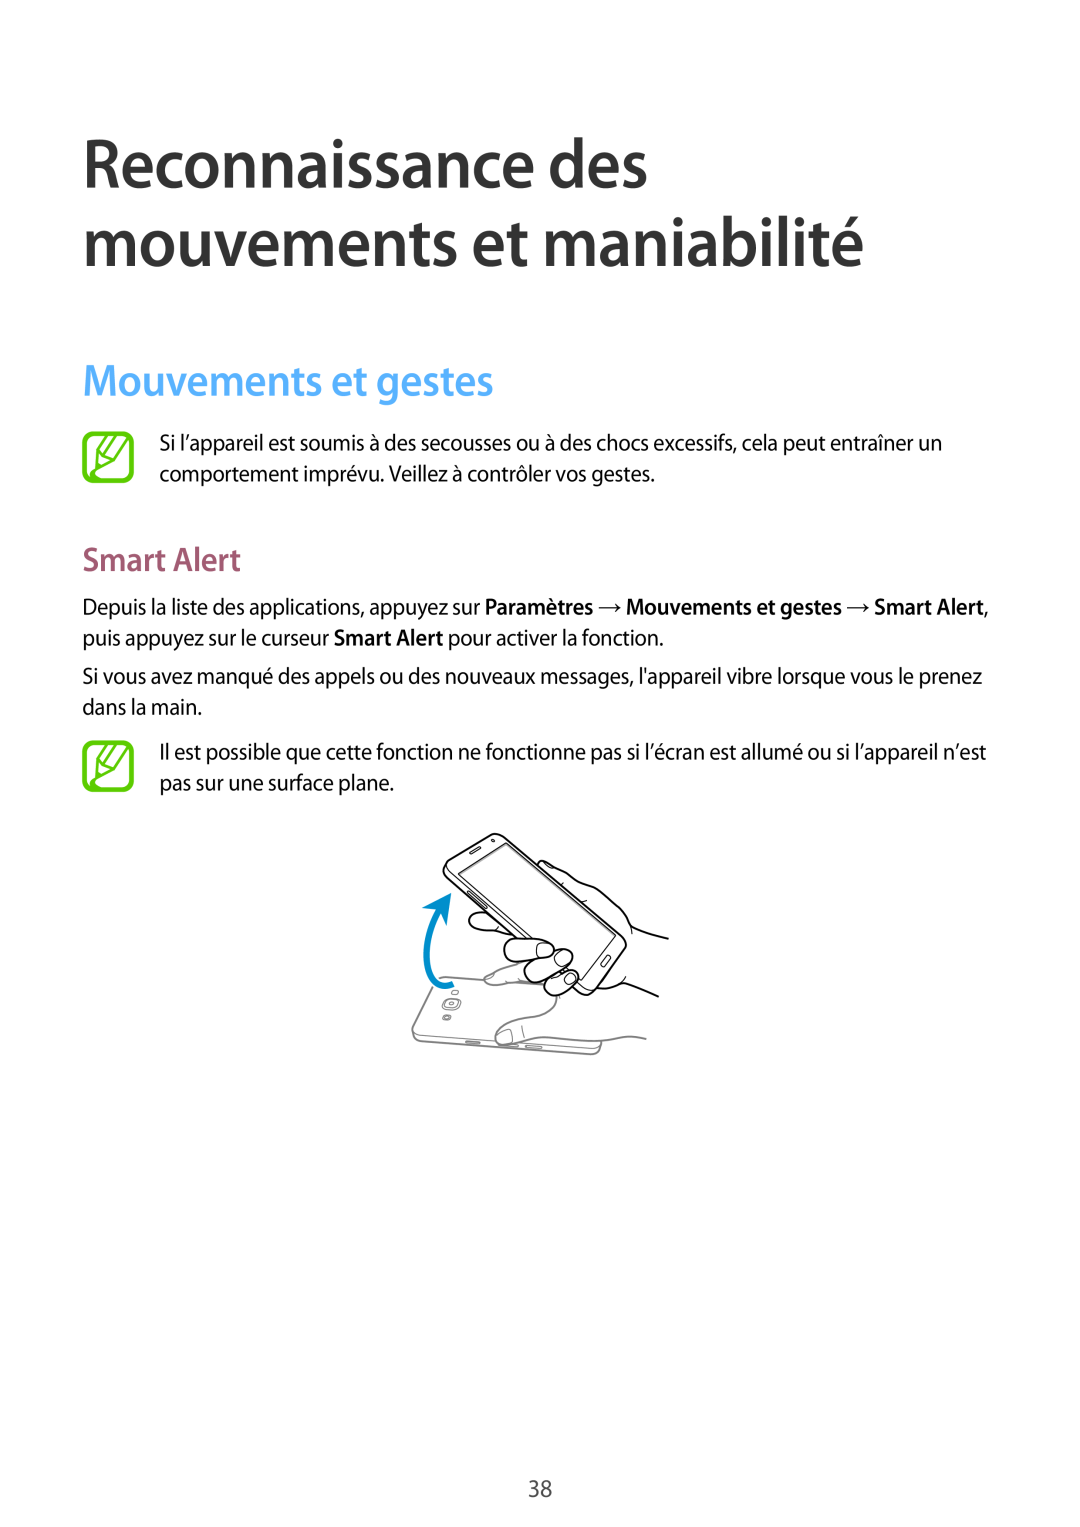 Samsung SM-A300FZKUSFR, SM-A300FZSUXEF Mouvements et gestes, Smart Alert, Reconnaissance des mouvements et maniabilité 